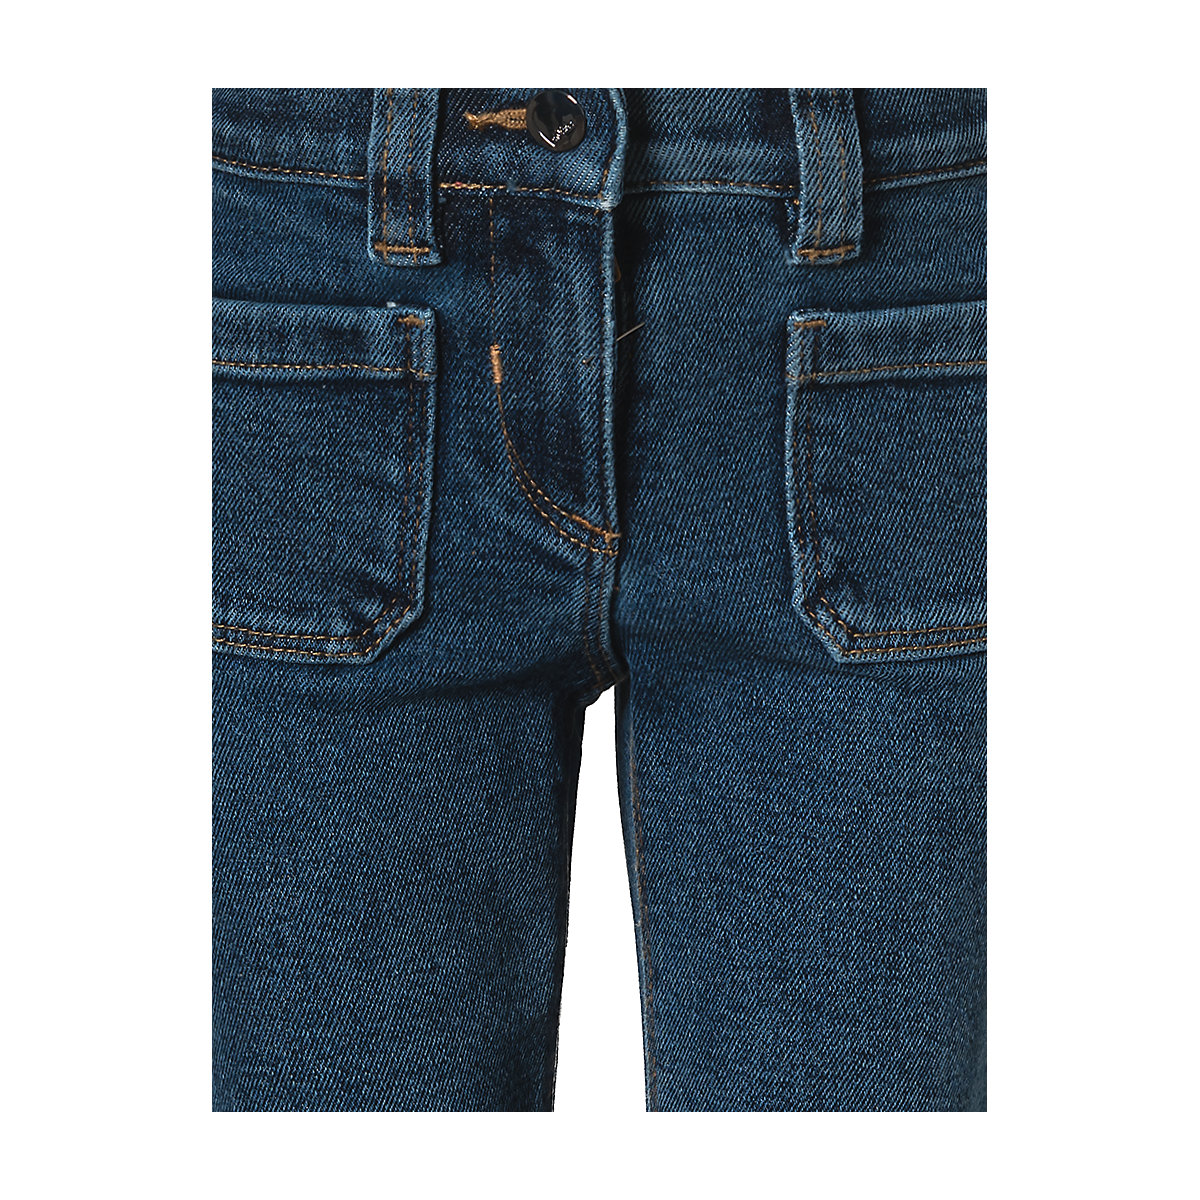 s.Oliver Jeans Flare Leg für Mädchen Passform Regular dunkelblau OR9337